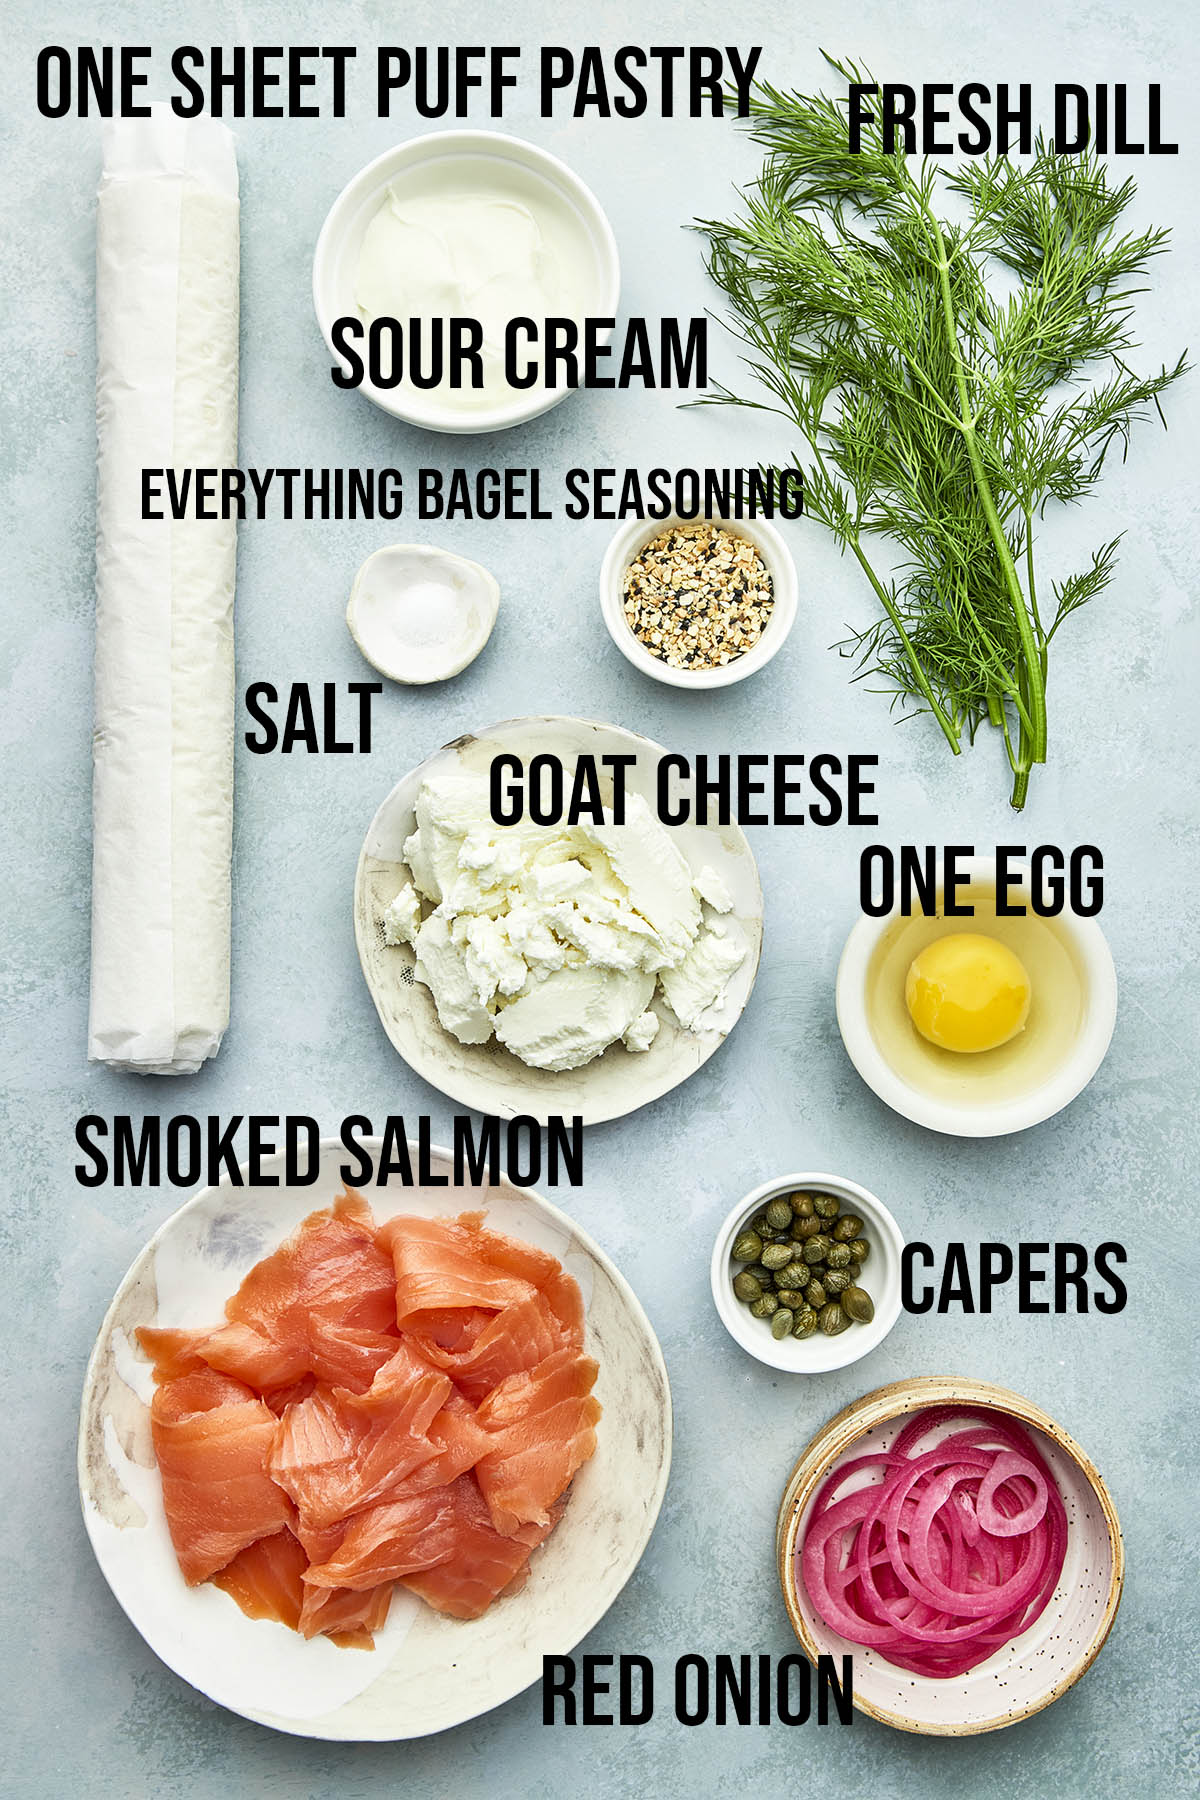 Ingredients to make this recipe.